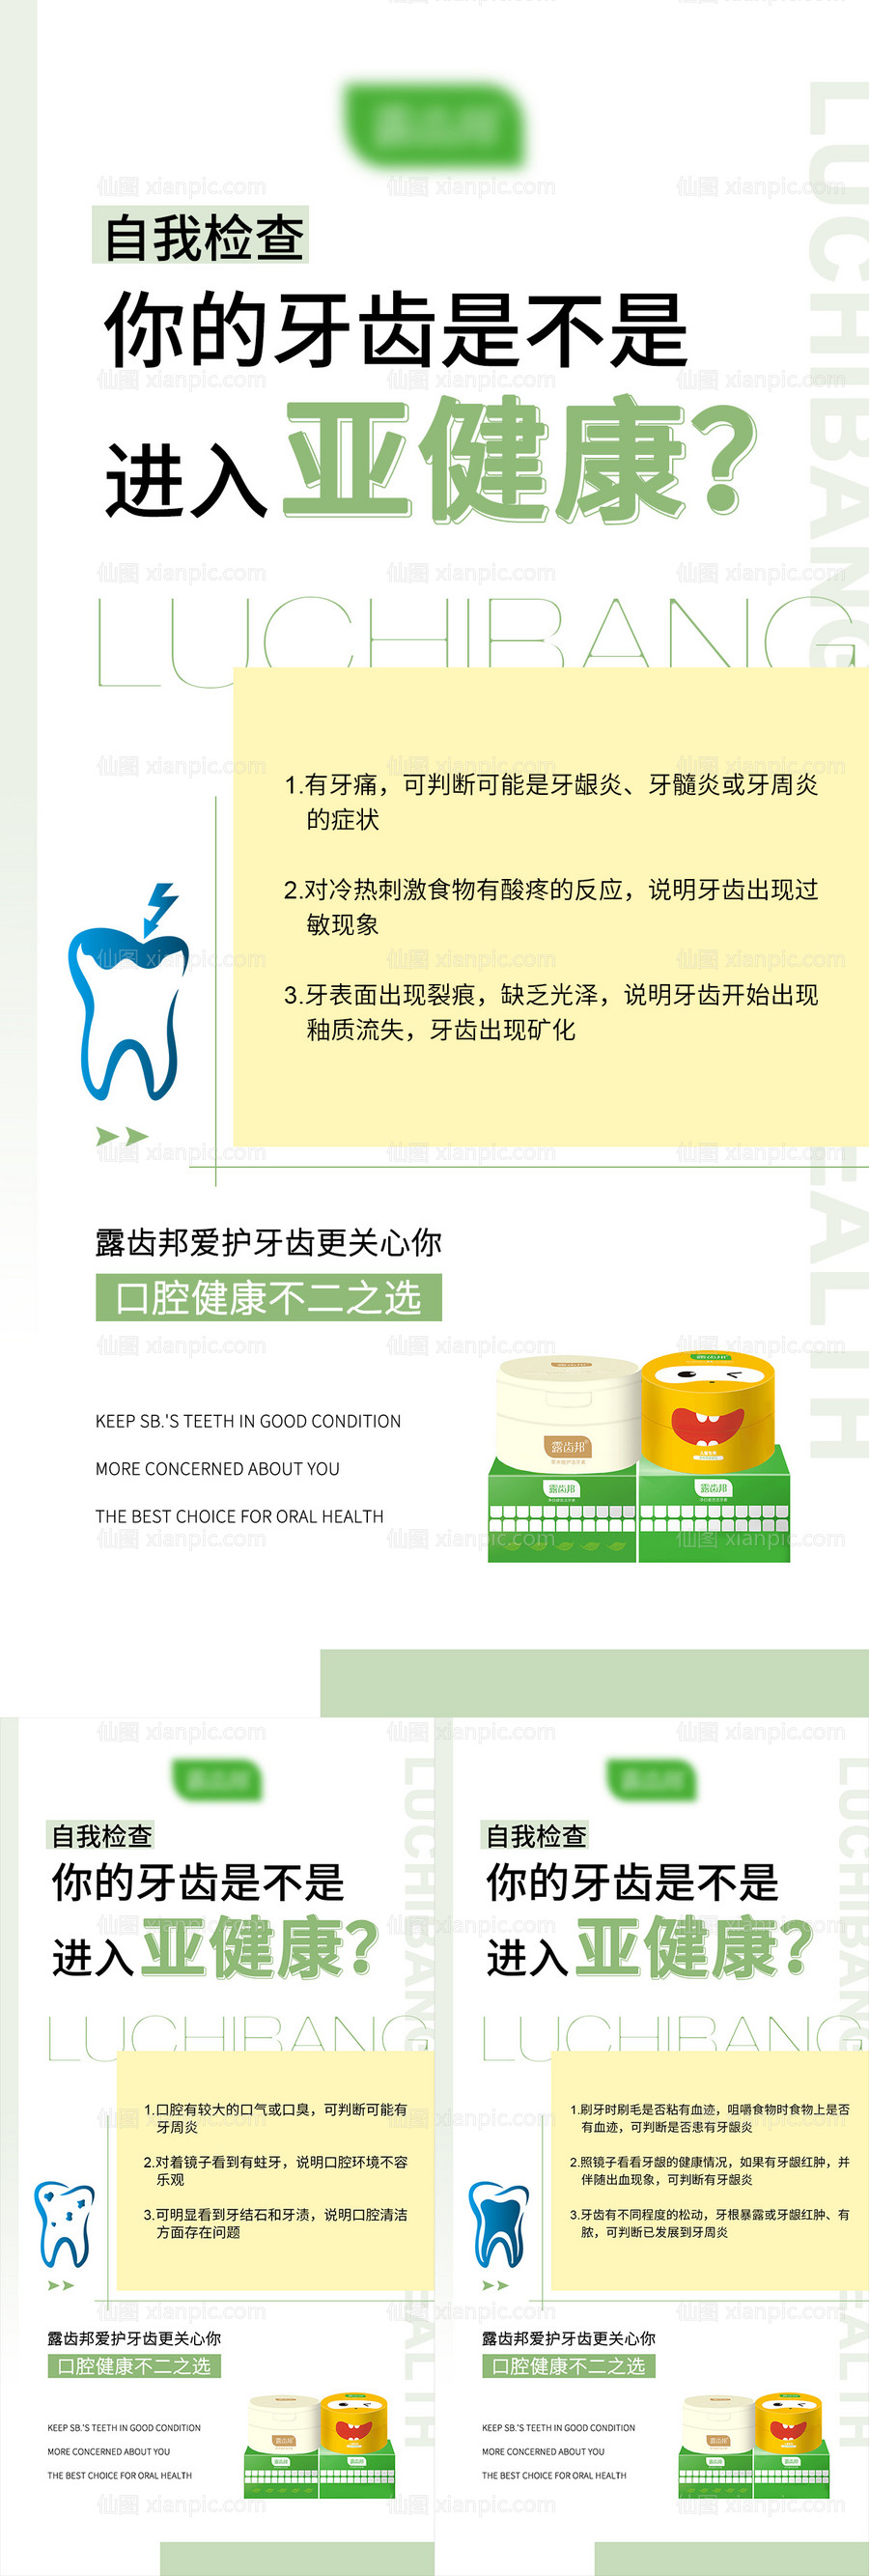 素材乐-刷牙洁牙素产品科普知识海报